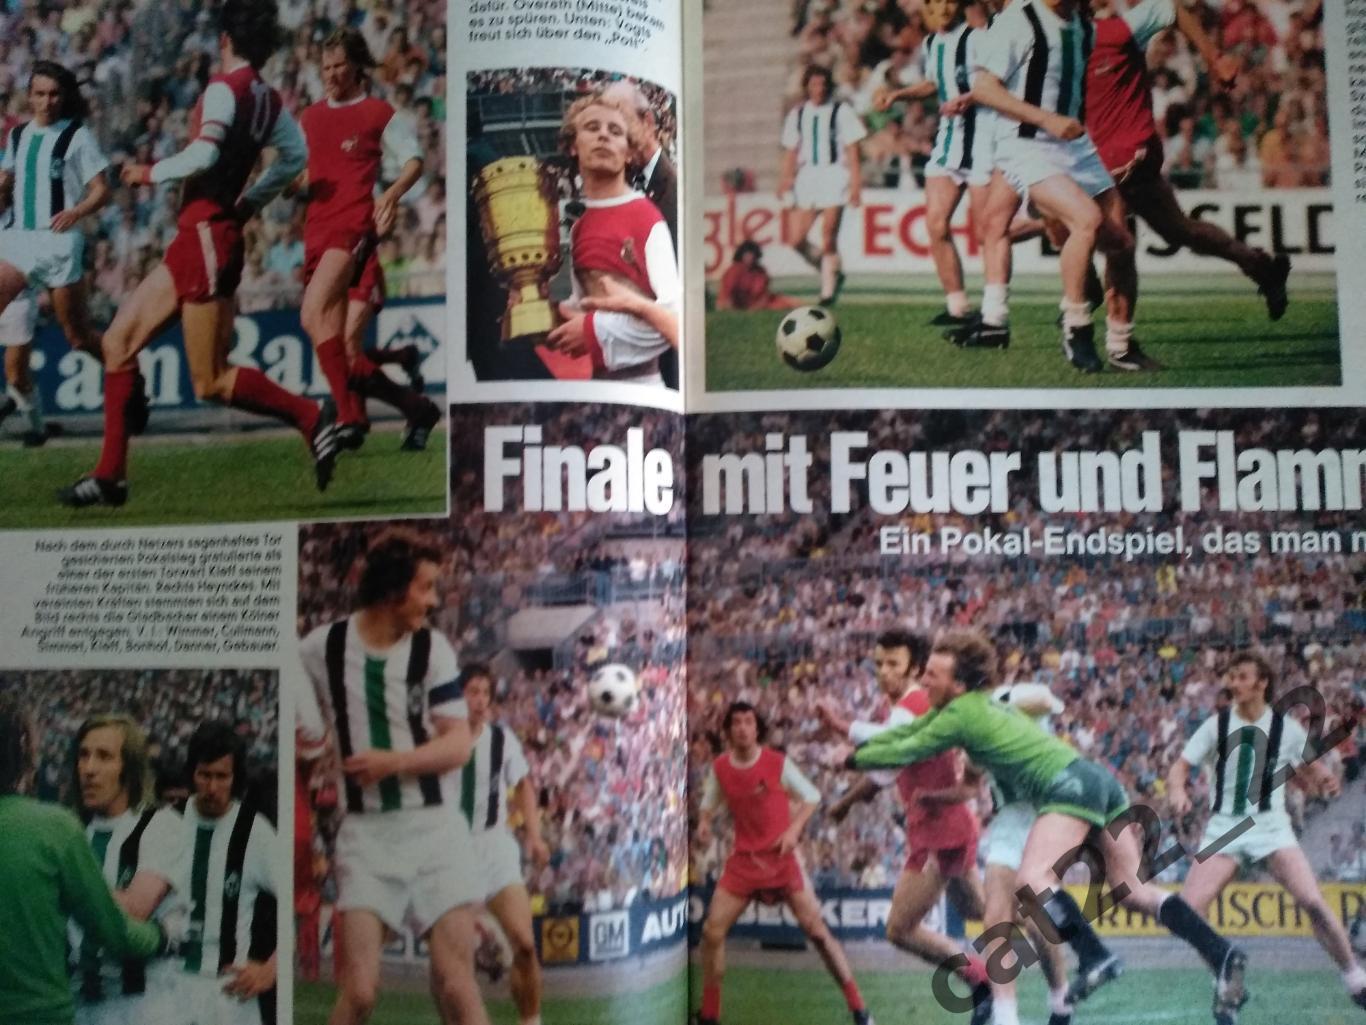 Журнал Кикер/Kicker. Полный номер. Все постеры. Германия. Сезон 1973/1974 1